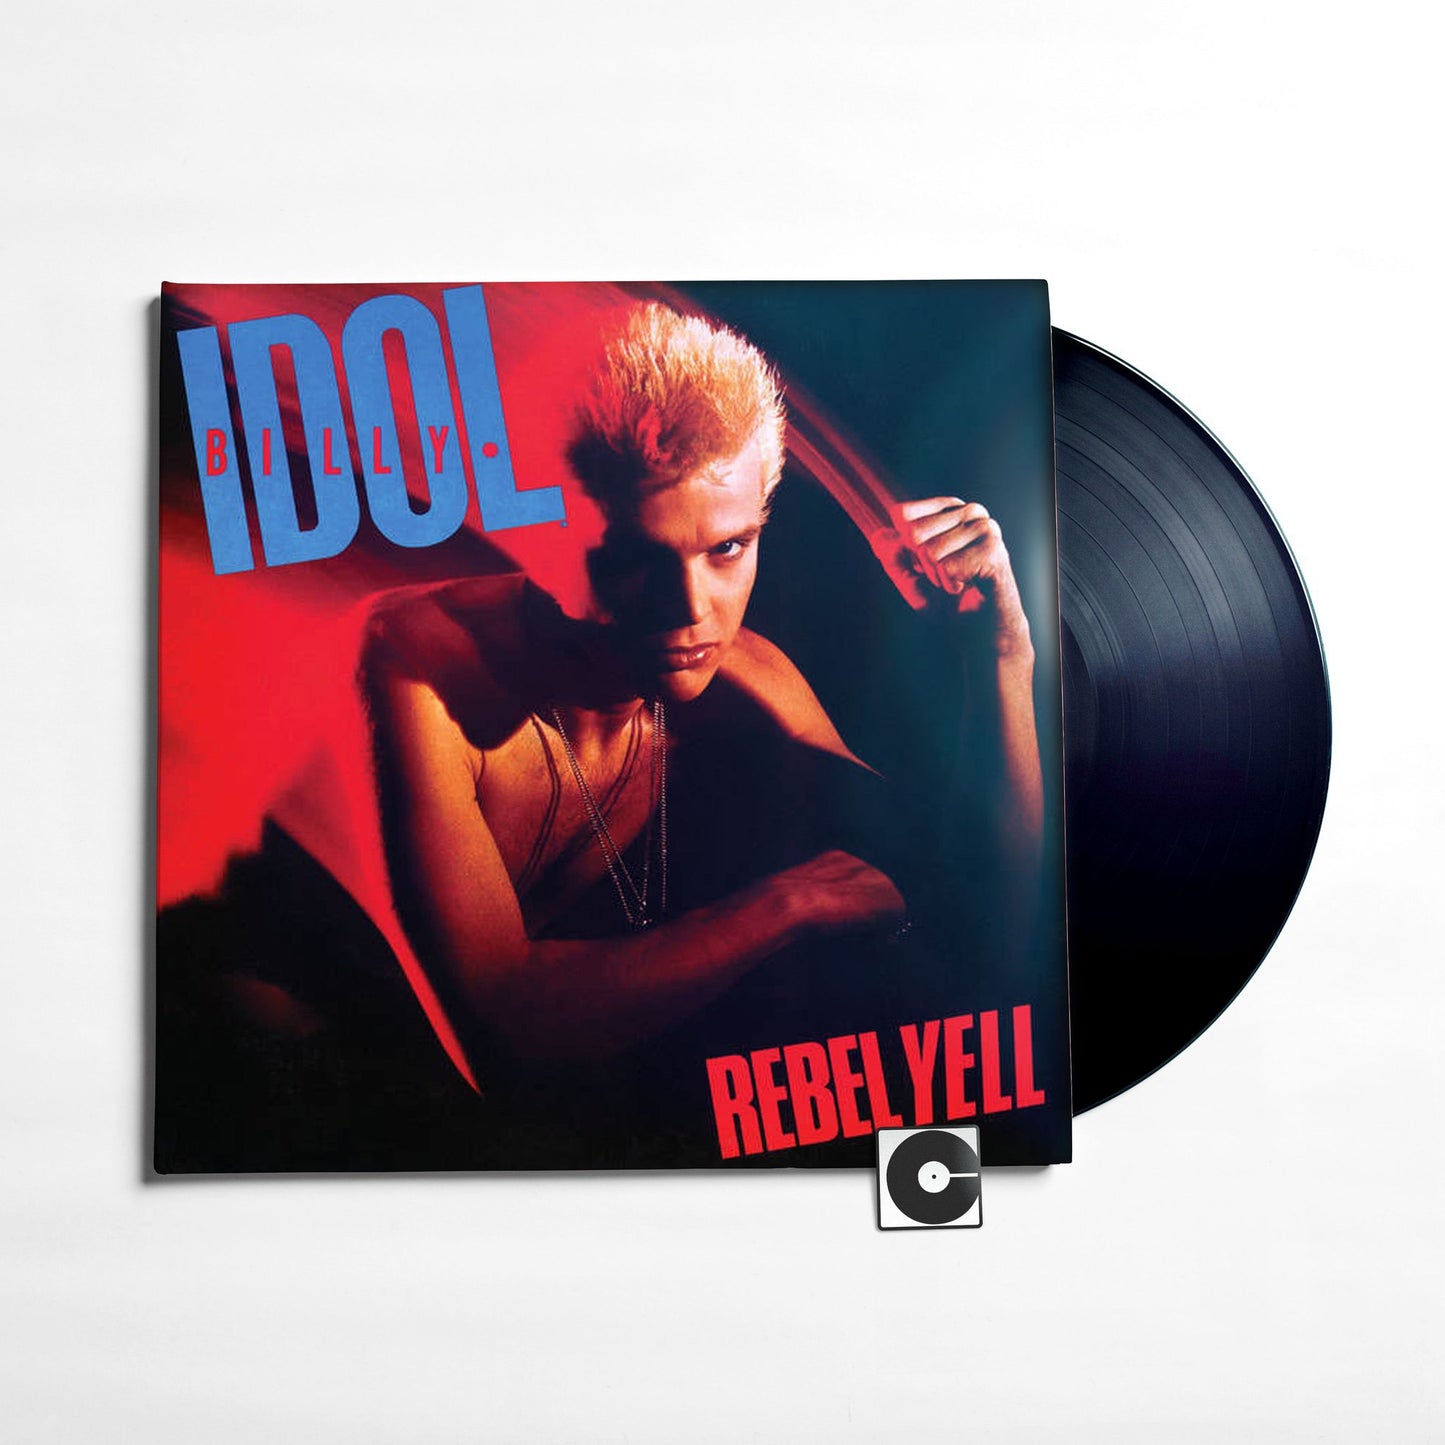 Billy Idol - "Rebel Yell"